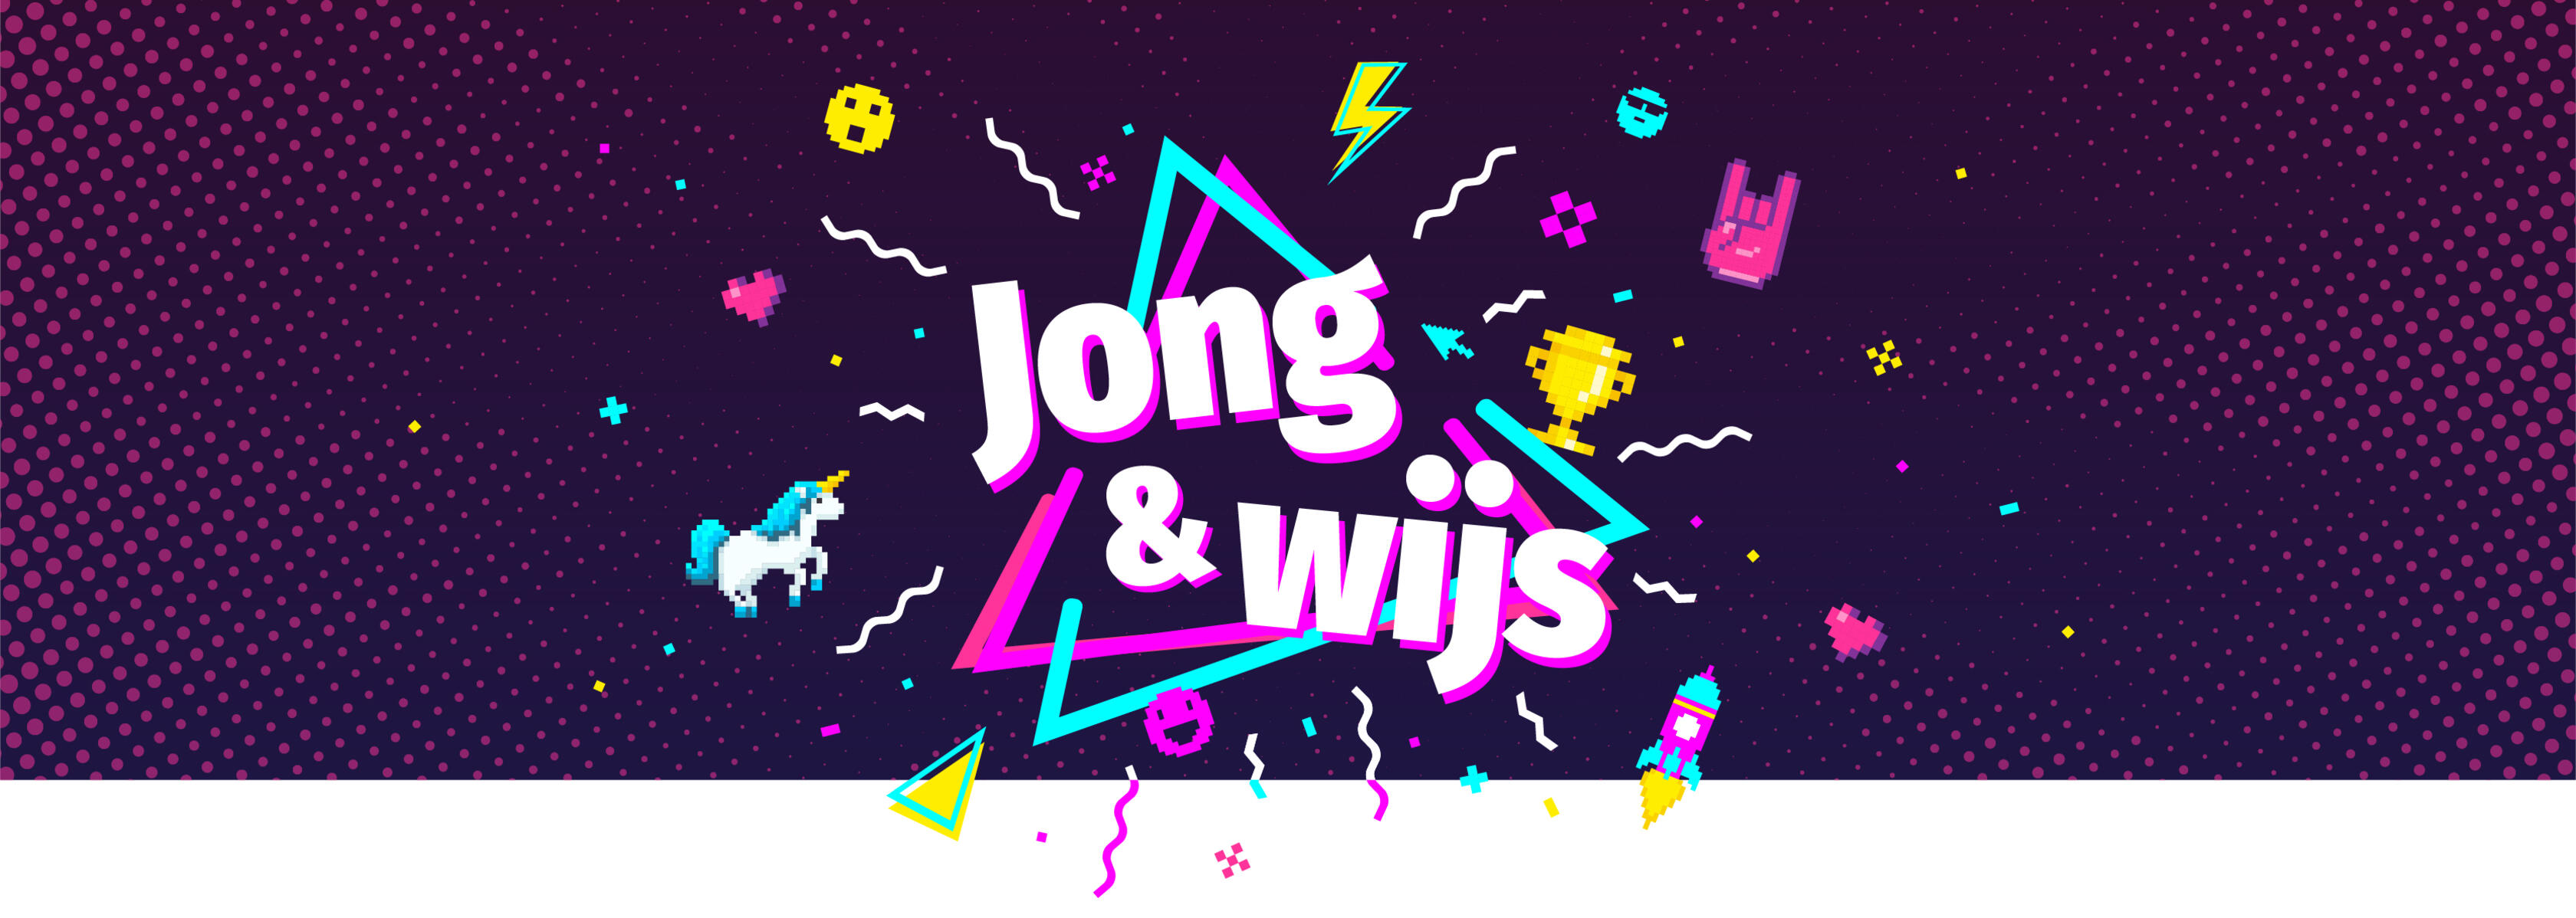 Jong & Wijs Awards - header afbeelding